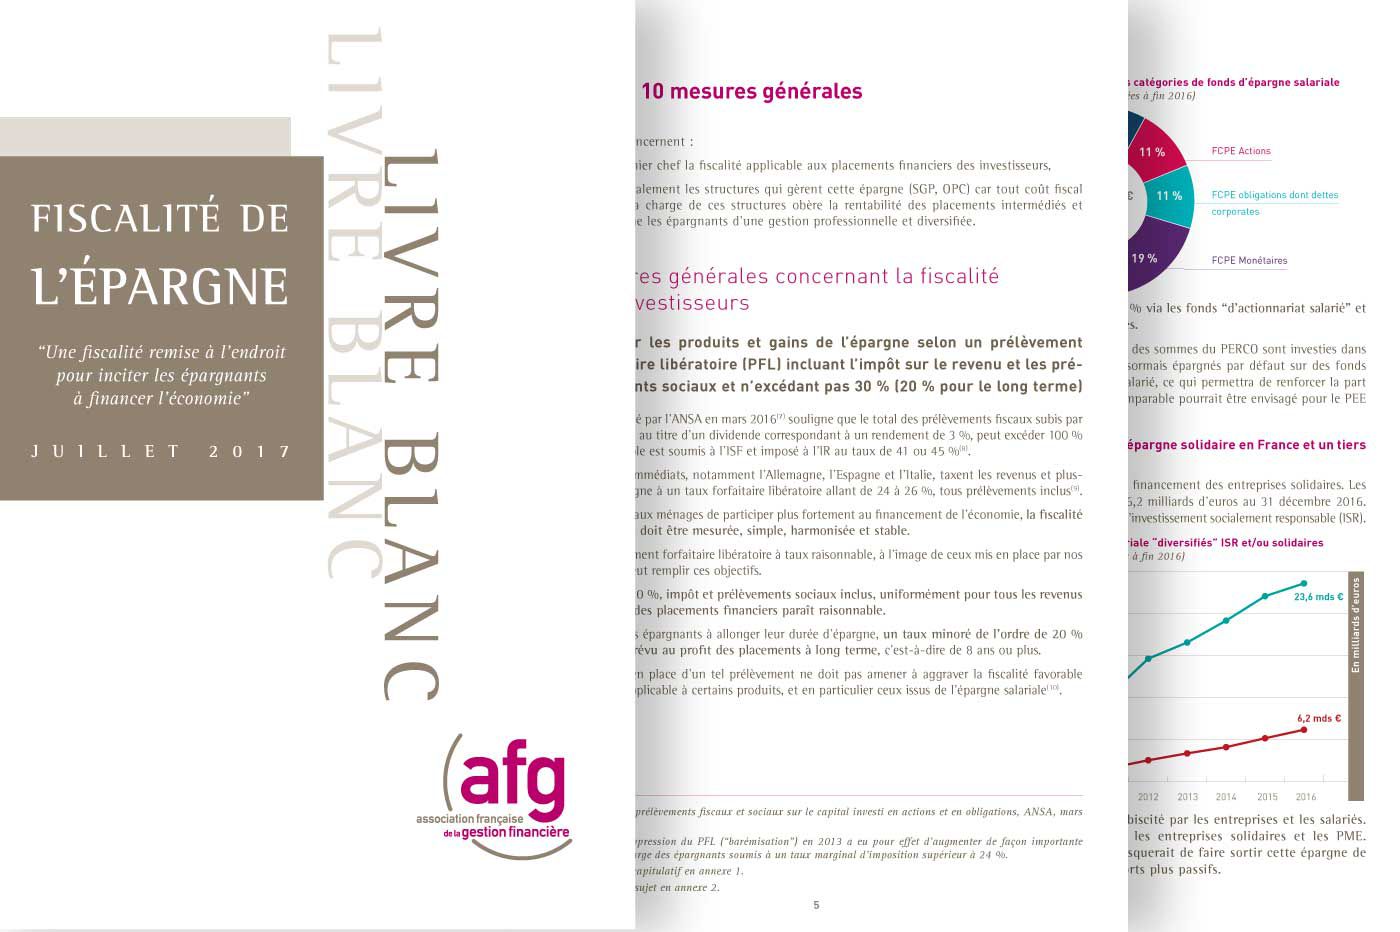 Edition pour l'Association Française de Gestion financière